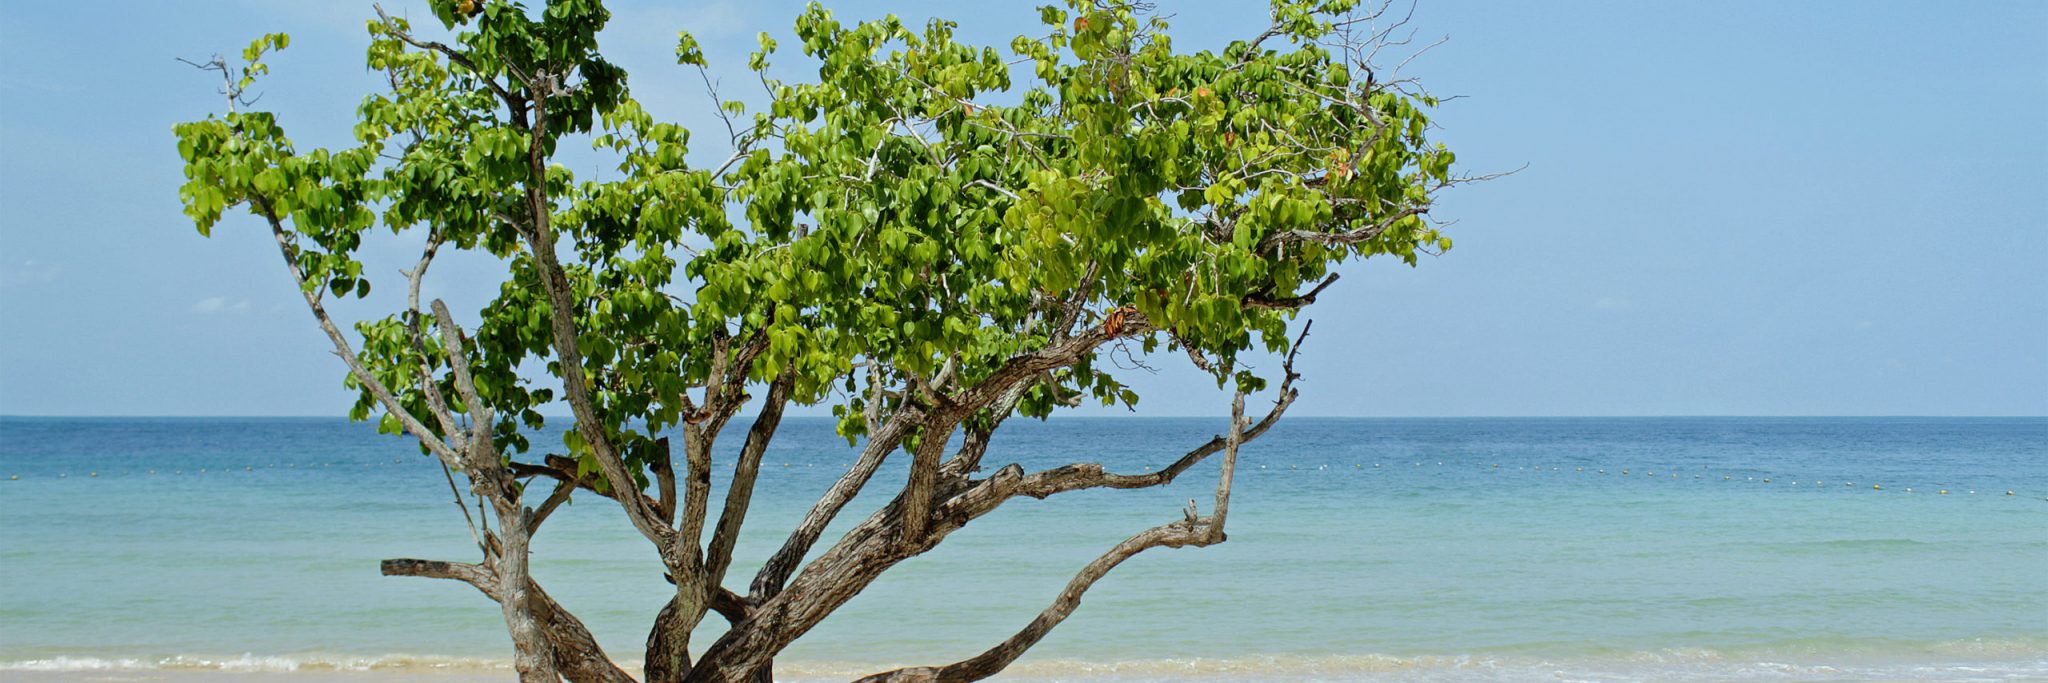 Tree on the beach, Thailand